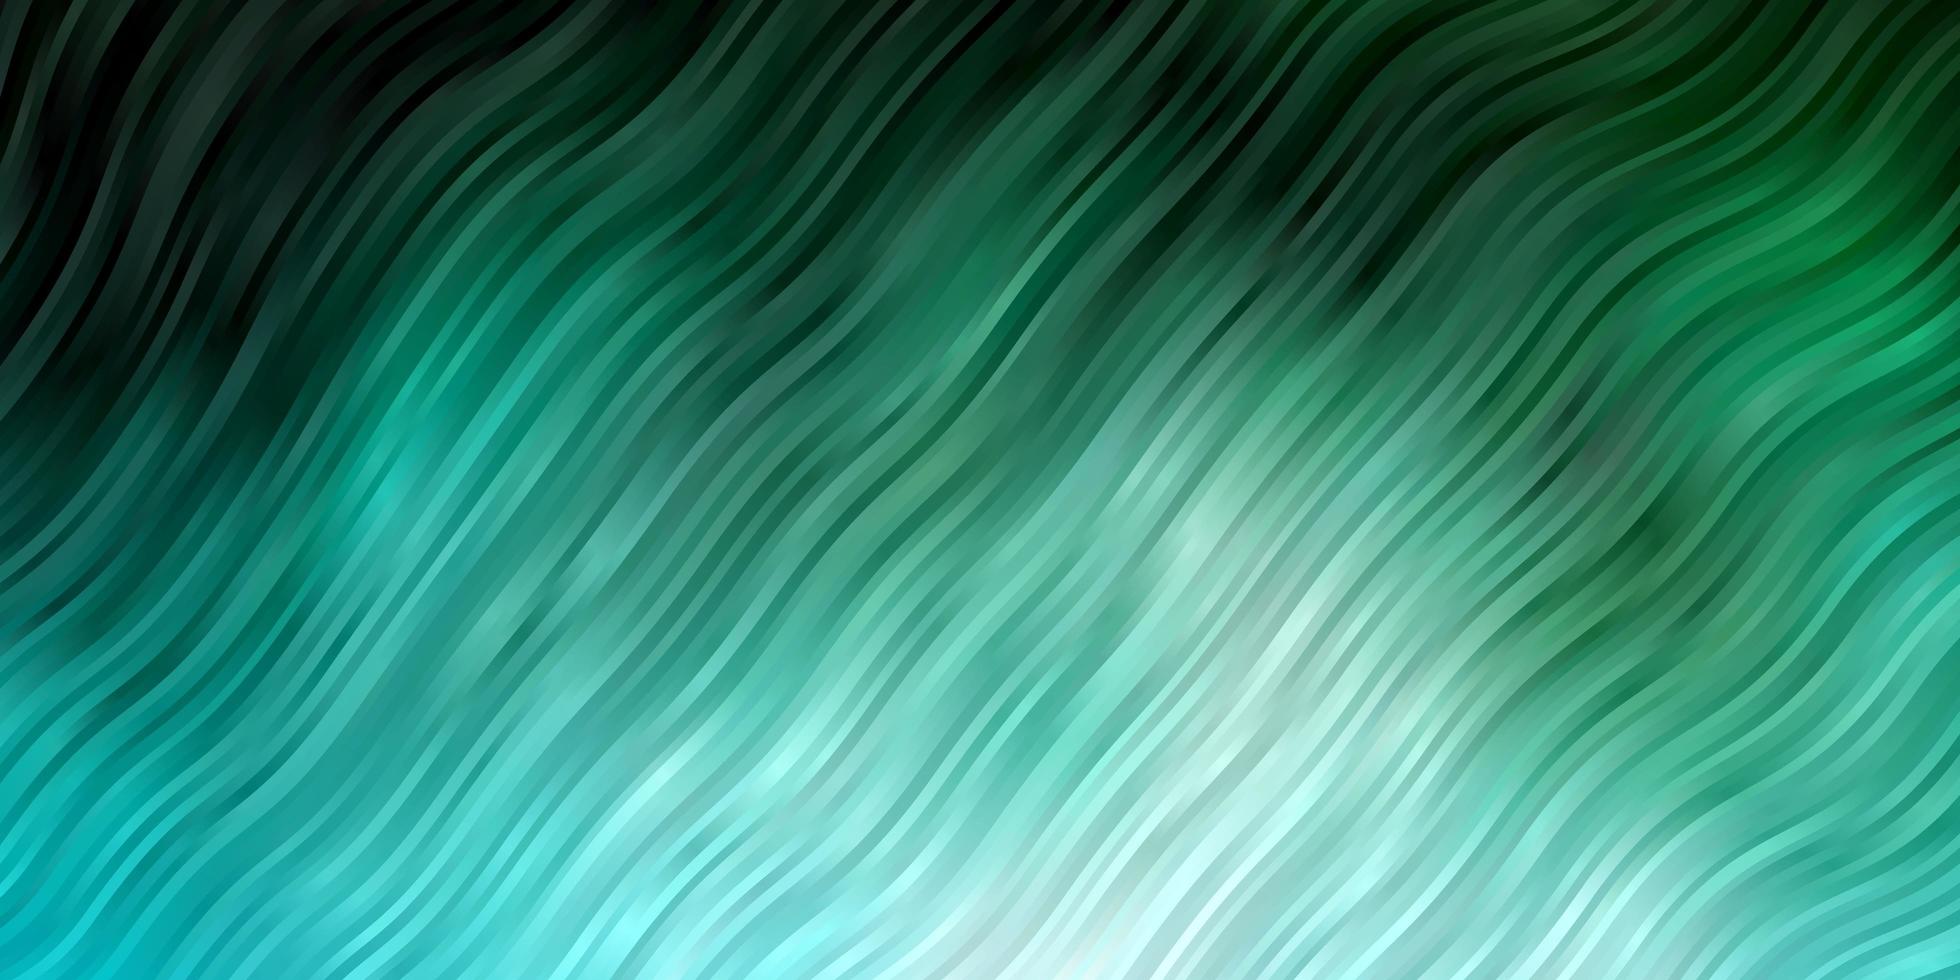 ljusblå, grön vektorbakgrund med böjda linjer vektor